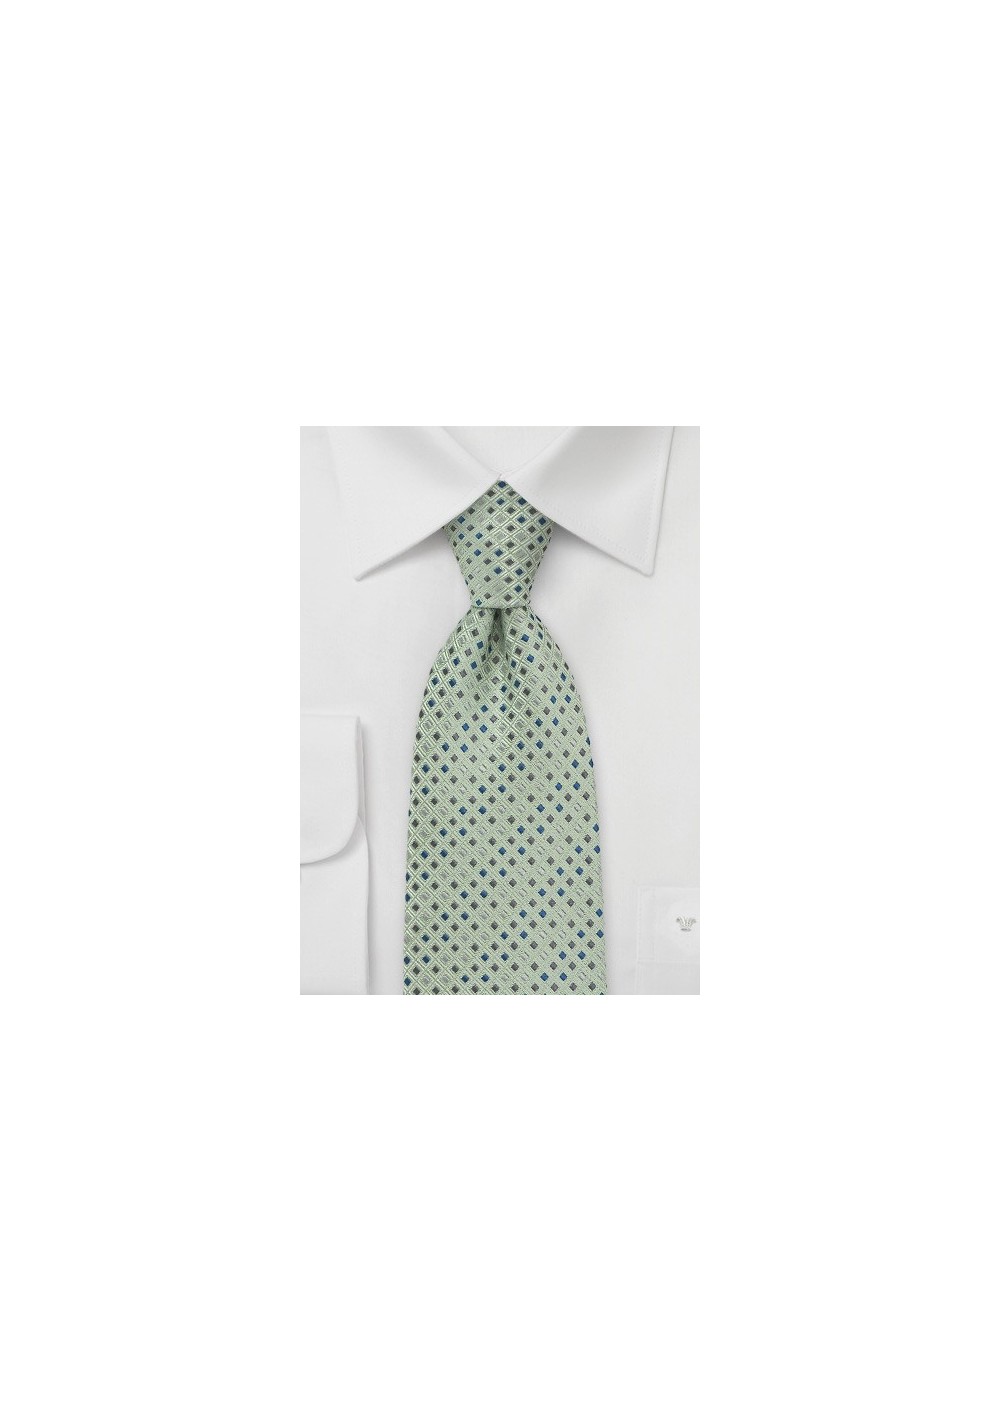 Patterned Tie in Light Green